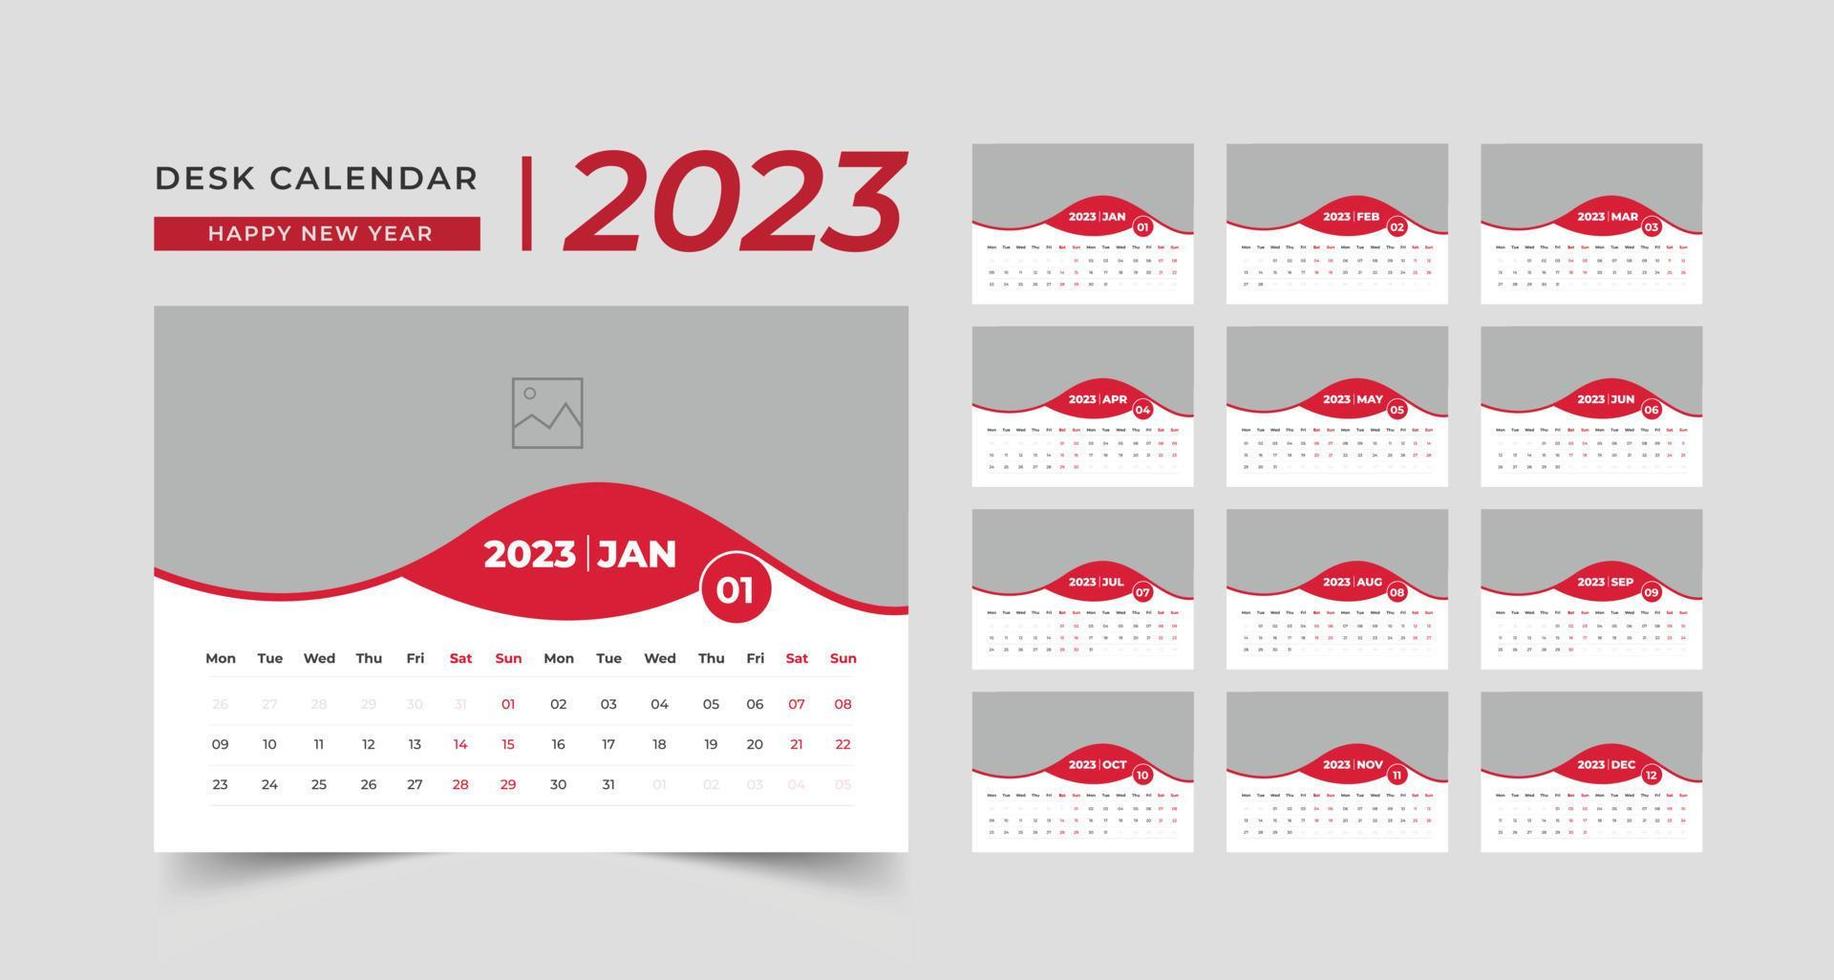 establecer diseño creativo de plantilla de calendario de escritorio 2023, 12 meses incluidos, calendario de escritorio corporativo vector